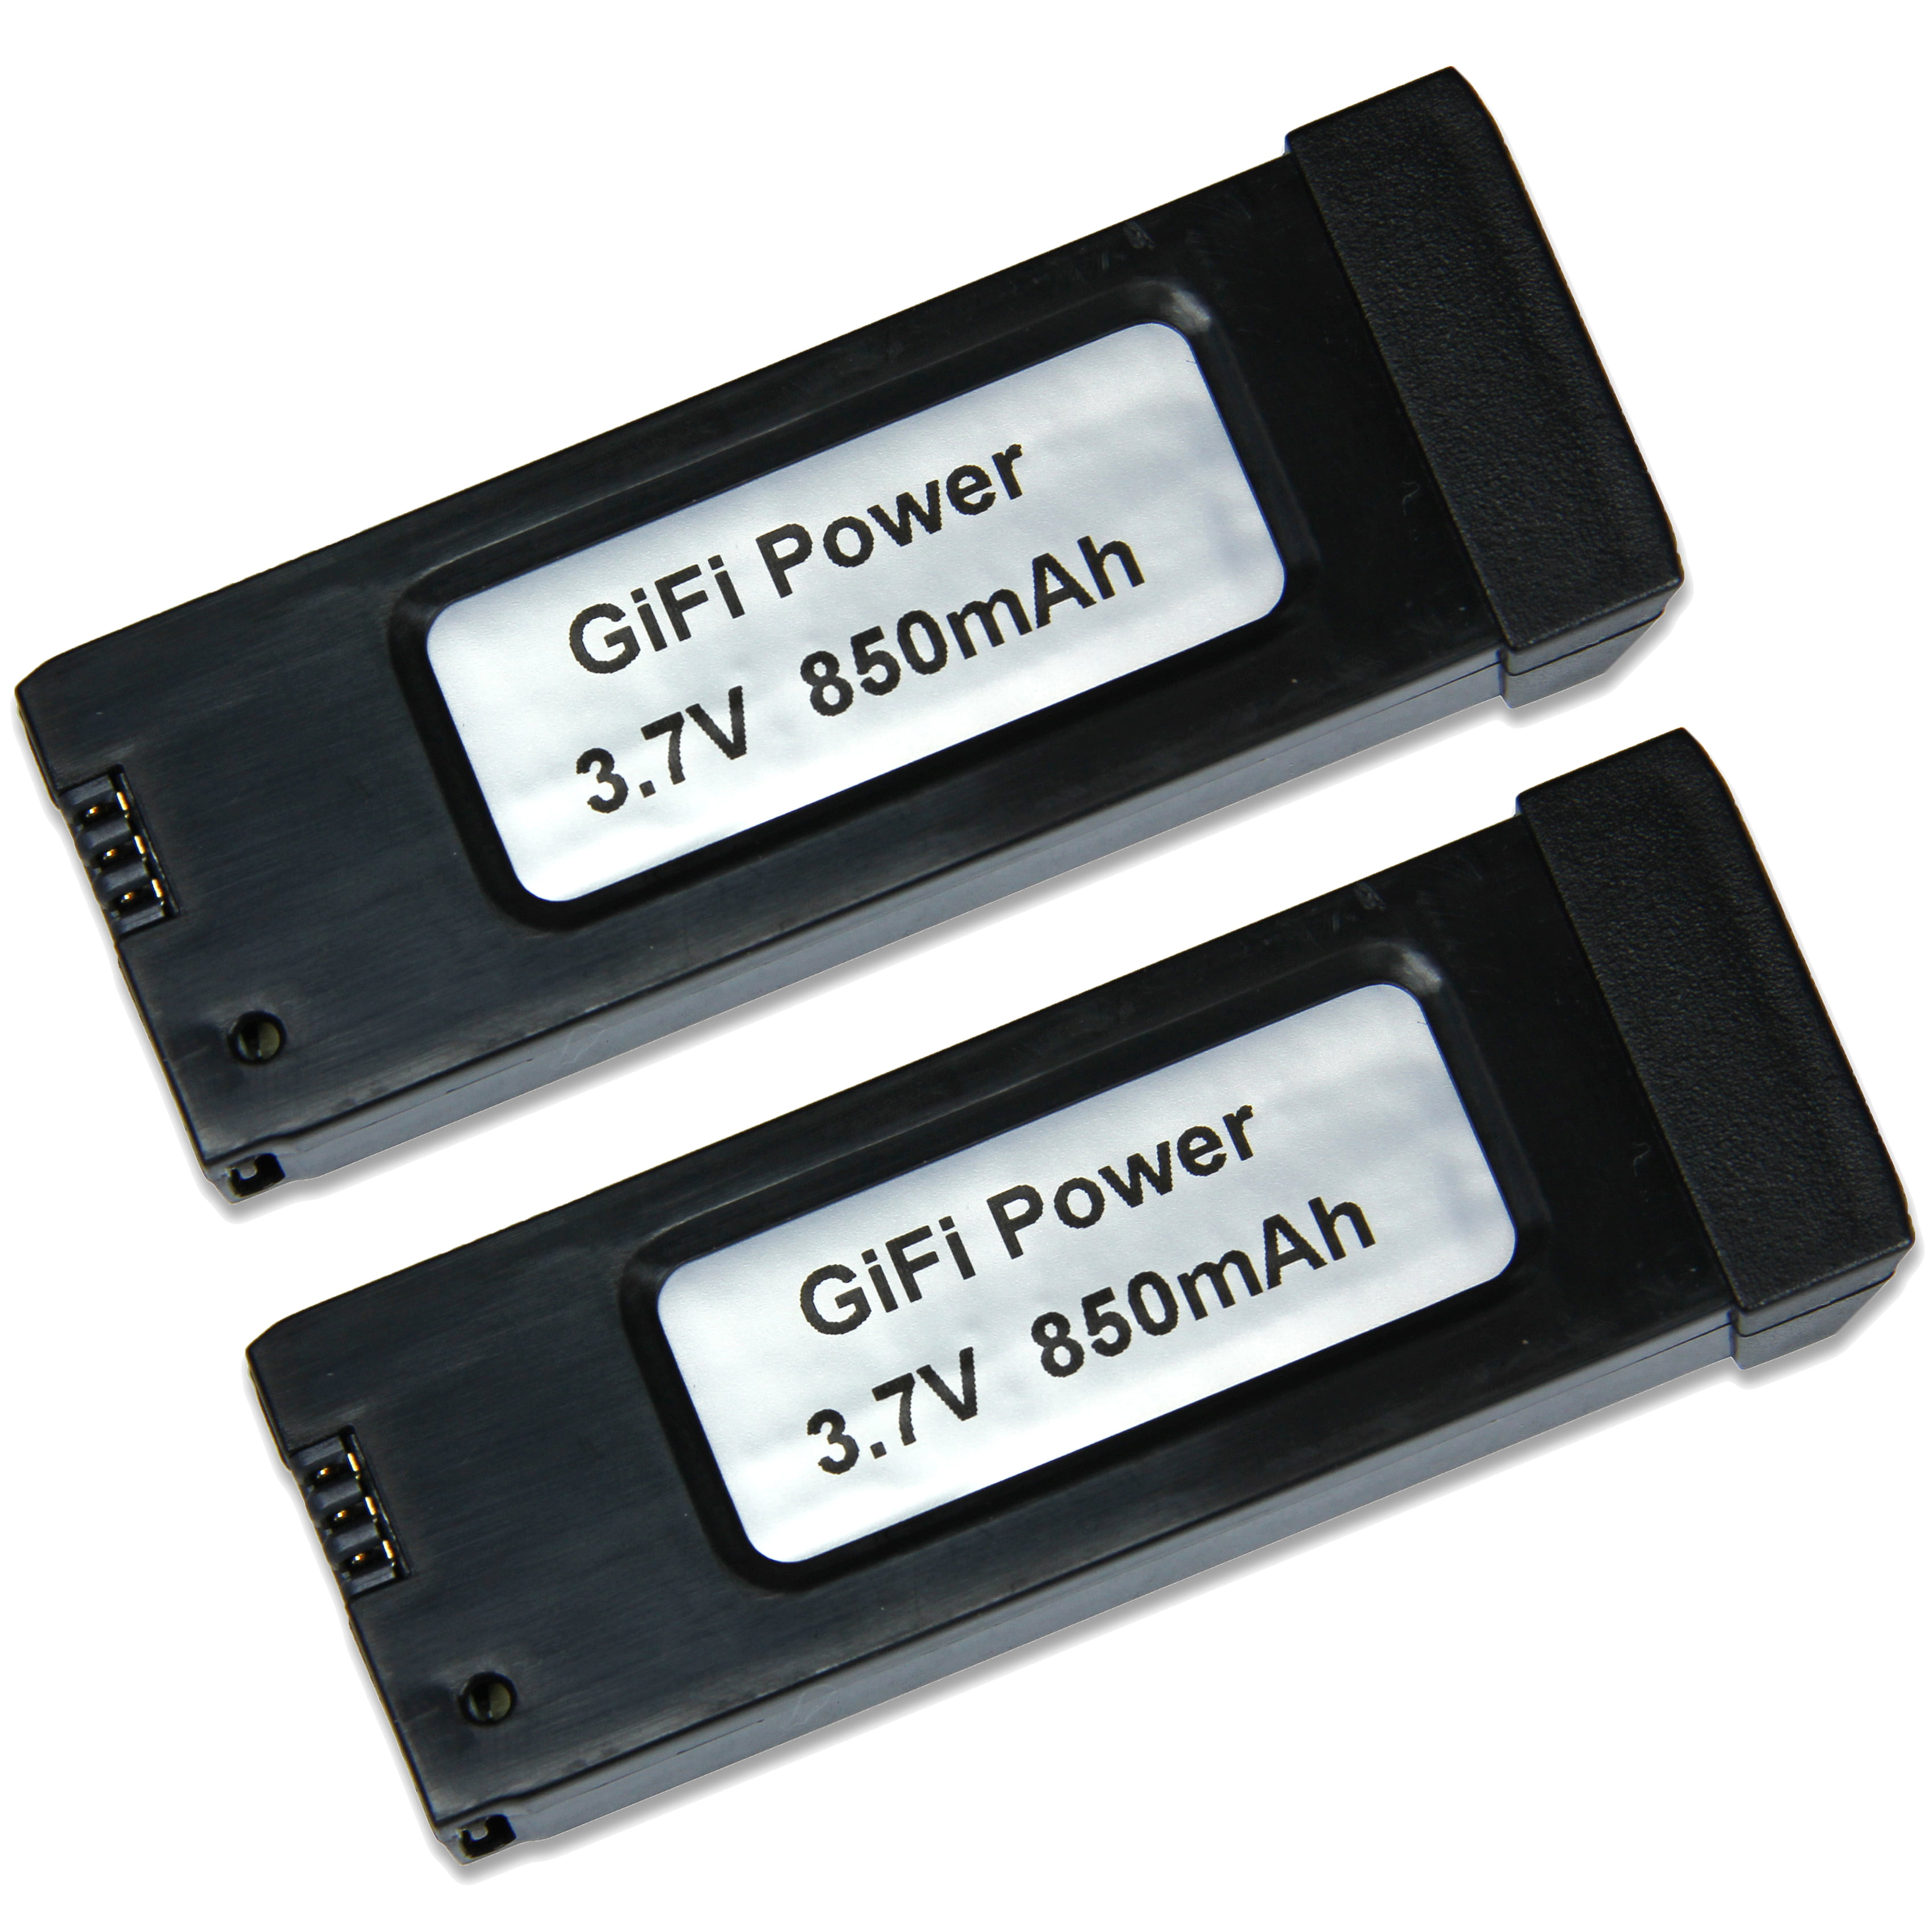 GiFi Power® 3.7V 850mAh Battery (Eachine E58) - 2 pack